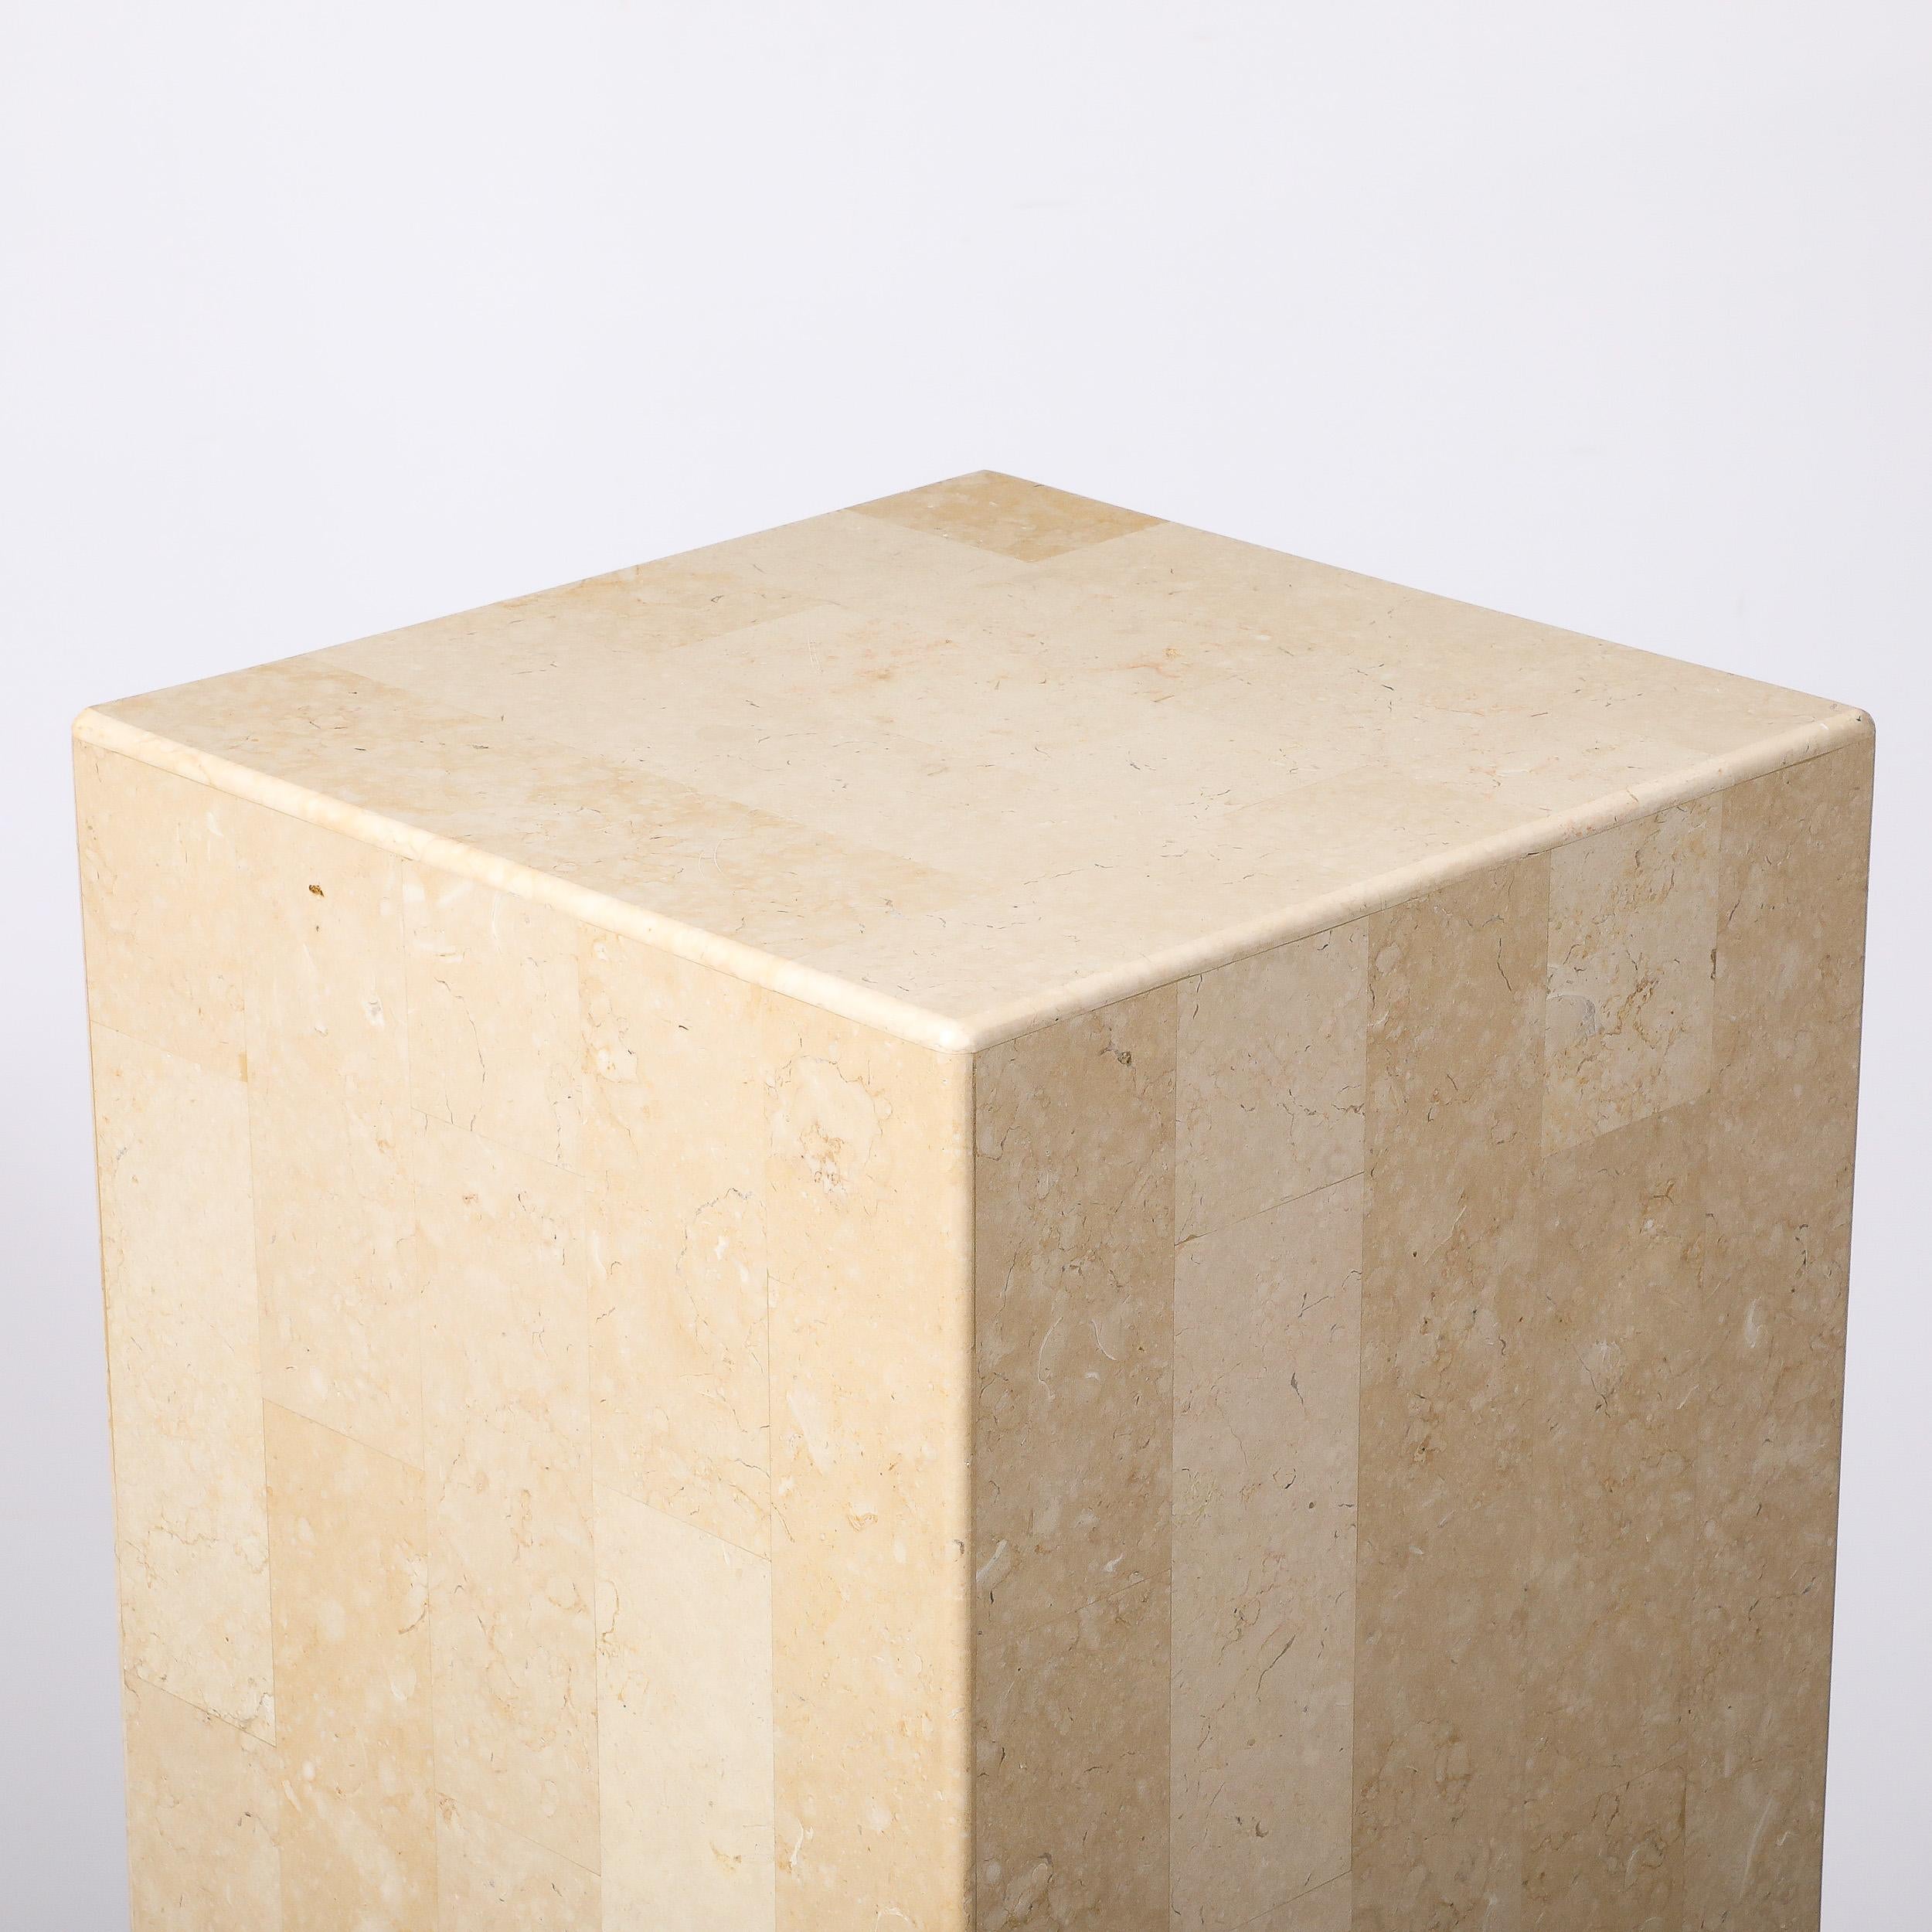 Ce piédestal en pierre tessellée, minimaliste et élégant, datant du milieu du siècle, a été réalisé par Maitland Smith et provient des États-Unis, vers 1980. Elle présente un haut profil rectangulaire composé de pierres tessellées, assemblées sans